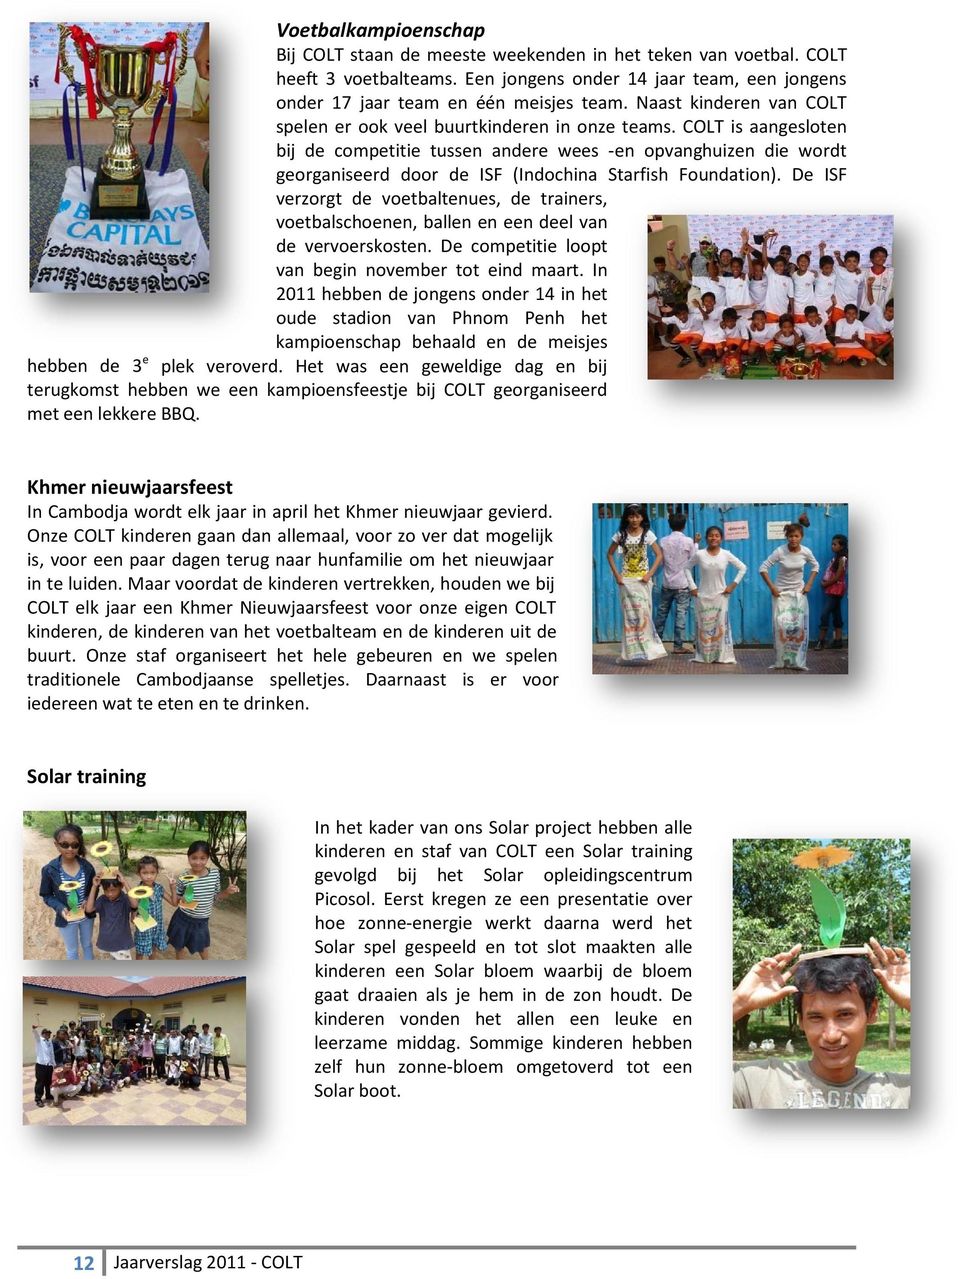 COLT is aangesloten bij de competitie tussen andere wees -en opvanghuizen die wordt georganiseerd door de ISF (Indochina Starfish Foundation).